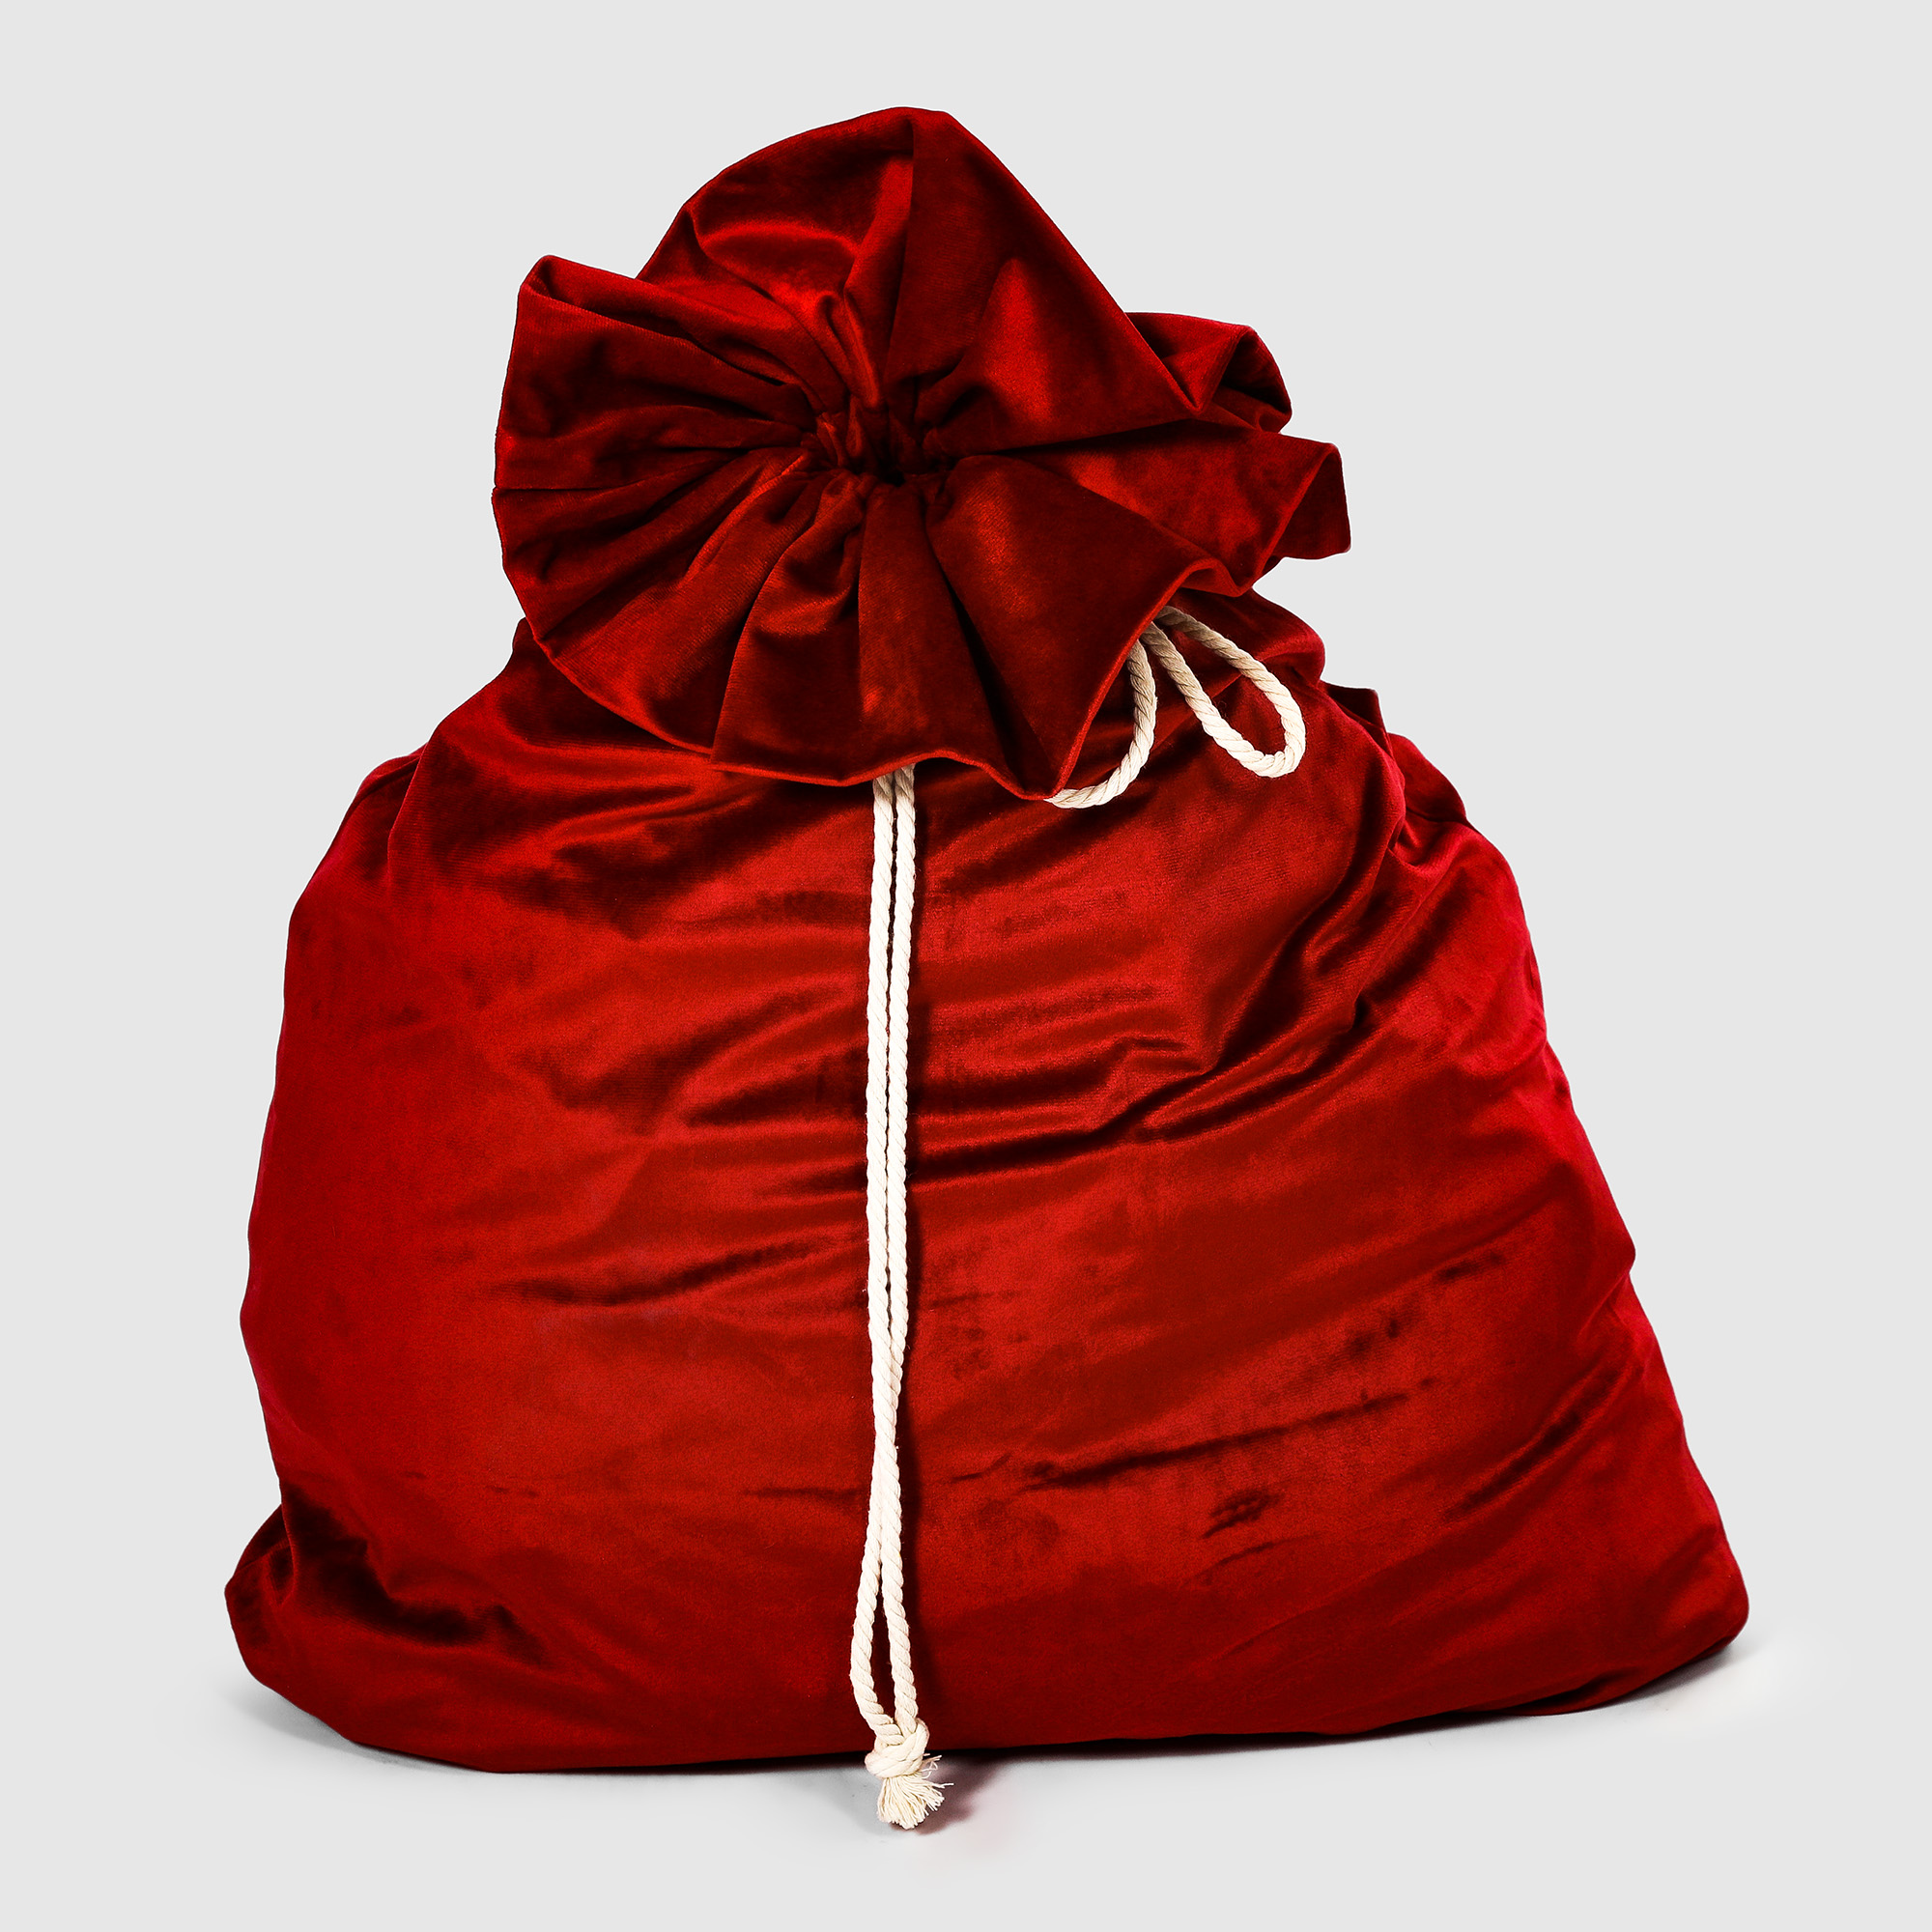 Мешок для подарков Bizzotto ny красный 60x100 см набор bizzotto ny из подсвечника со свечами красный 8шт